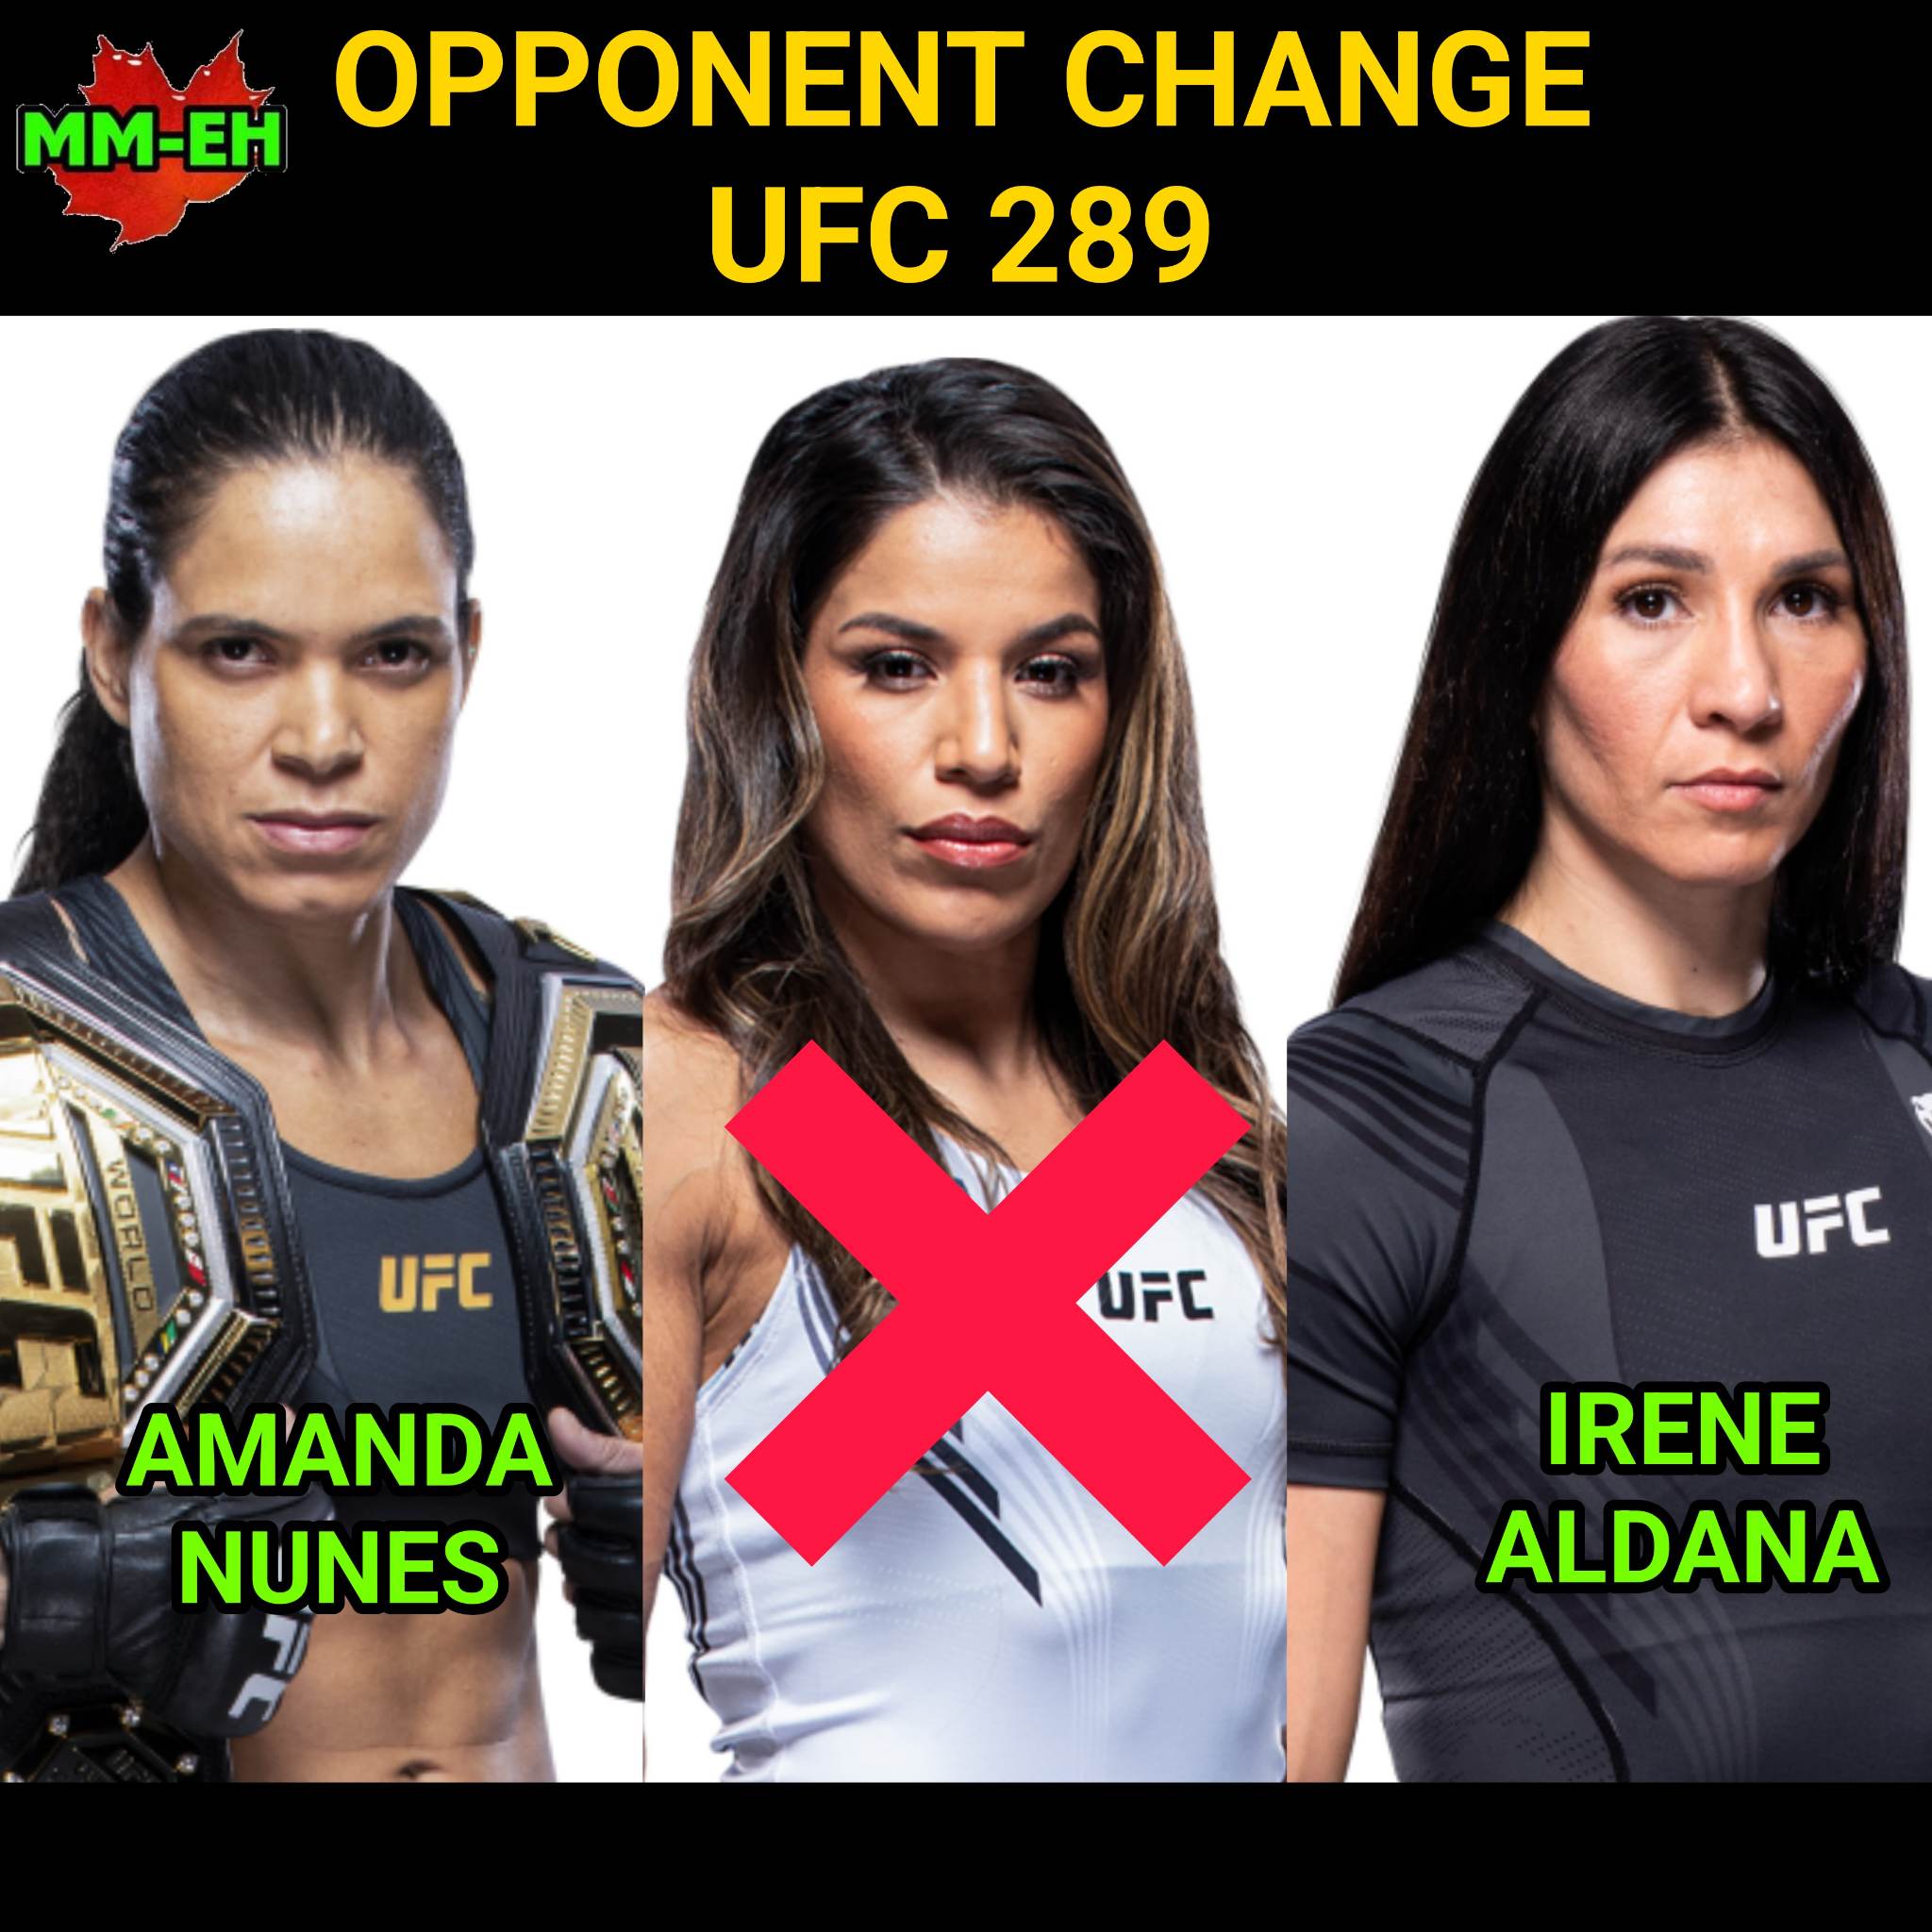 Pena Out, Aldana In Versus Amanda Nunes at UFC 289